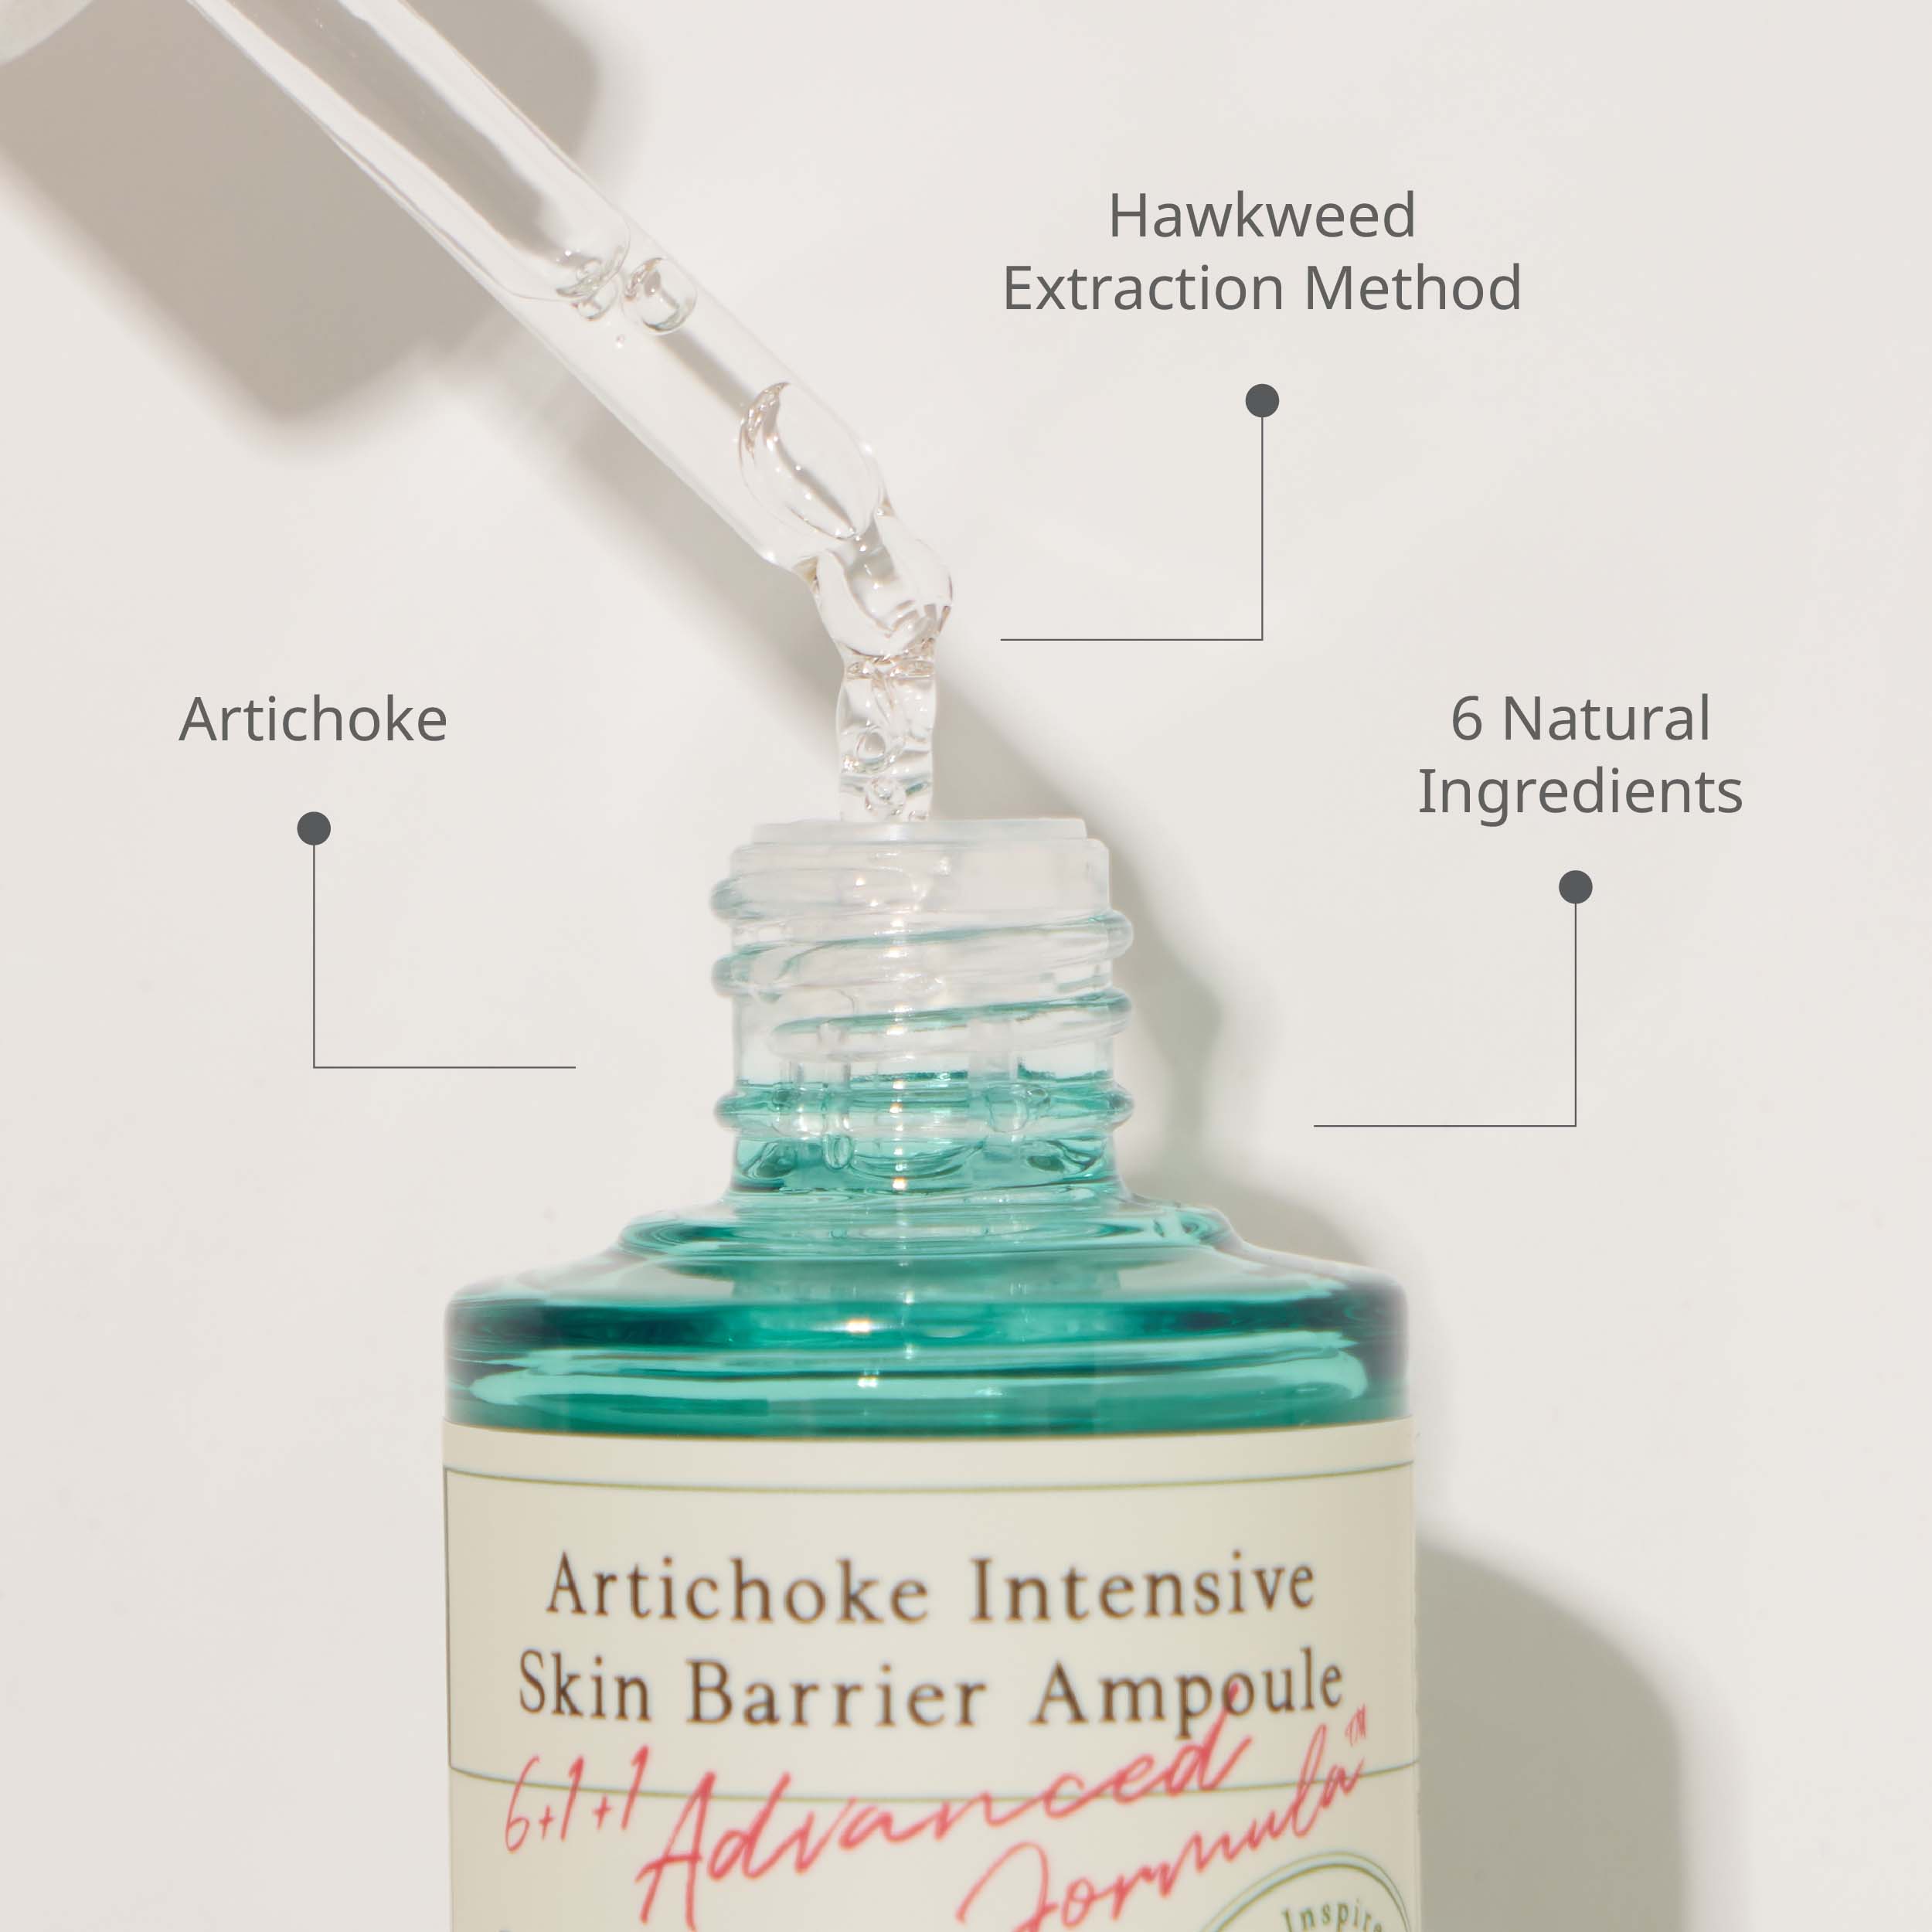 AXIS-Y Artichoke Intensive Skin Barrier Ampoule